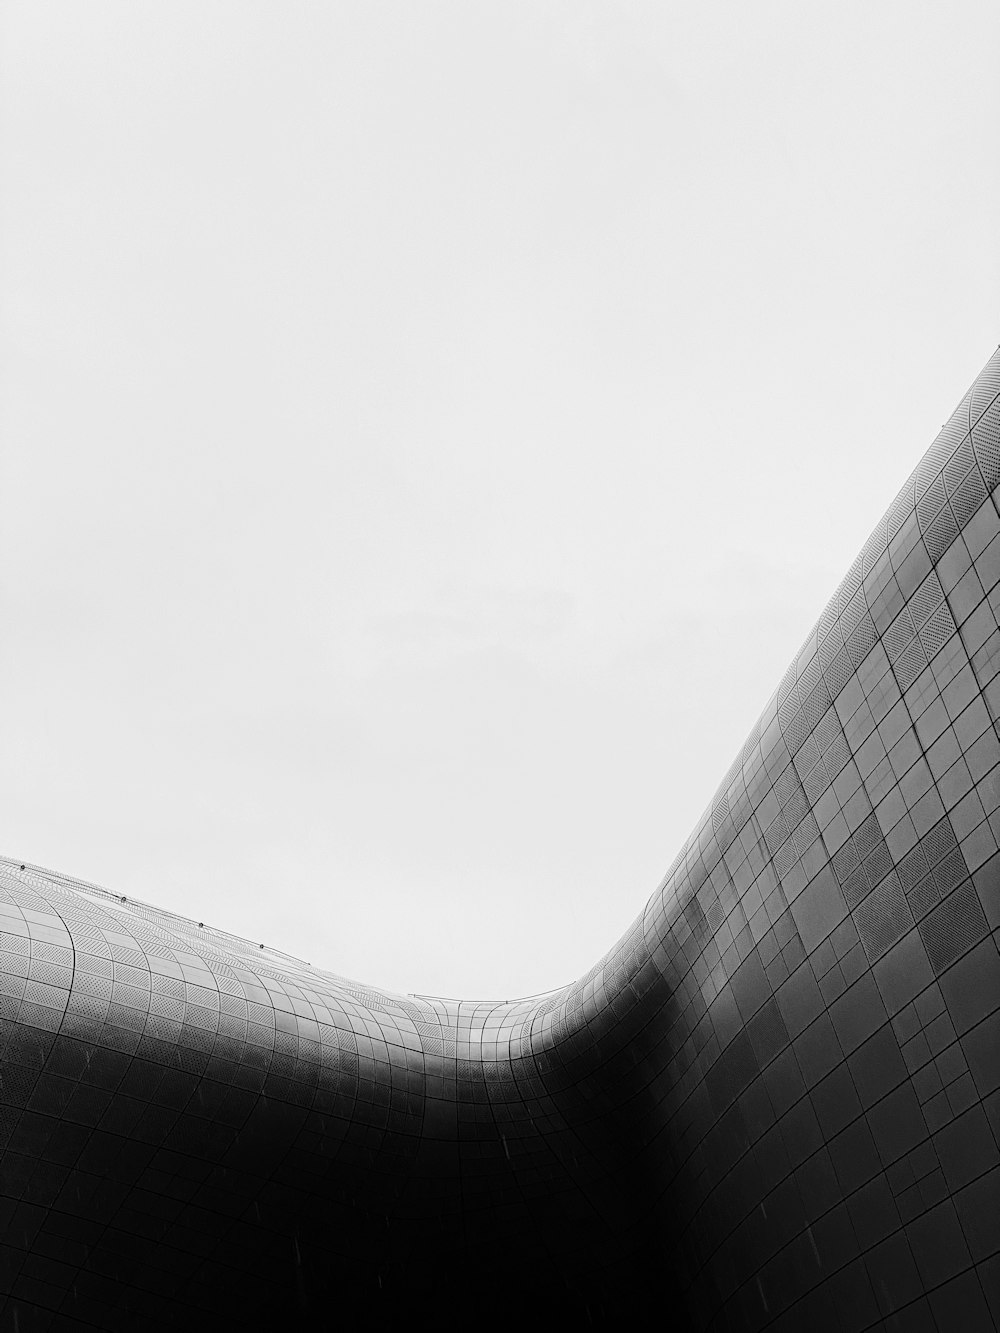 곡선 건물의 흑백 사진